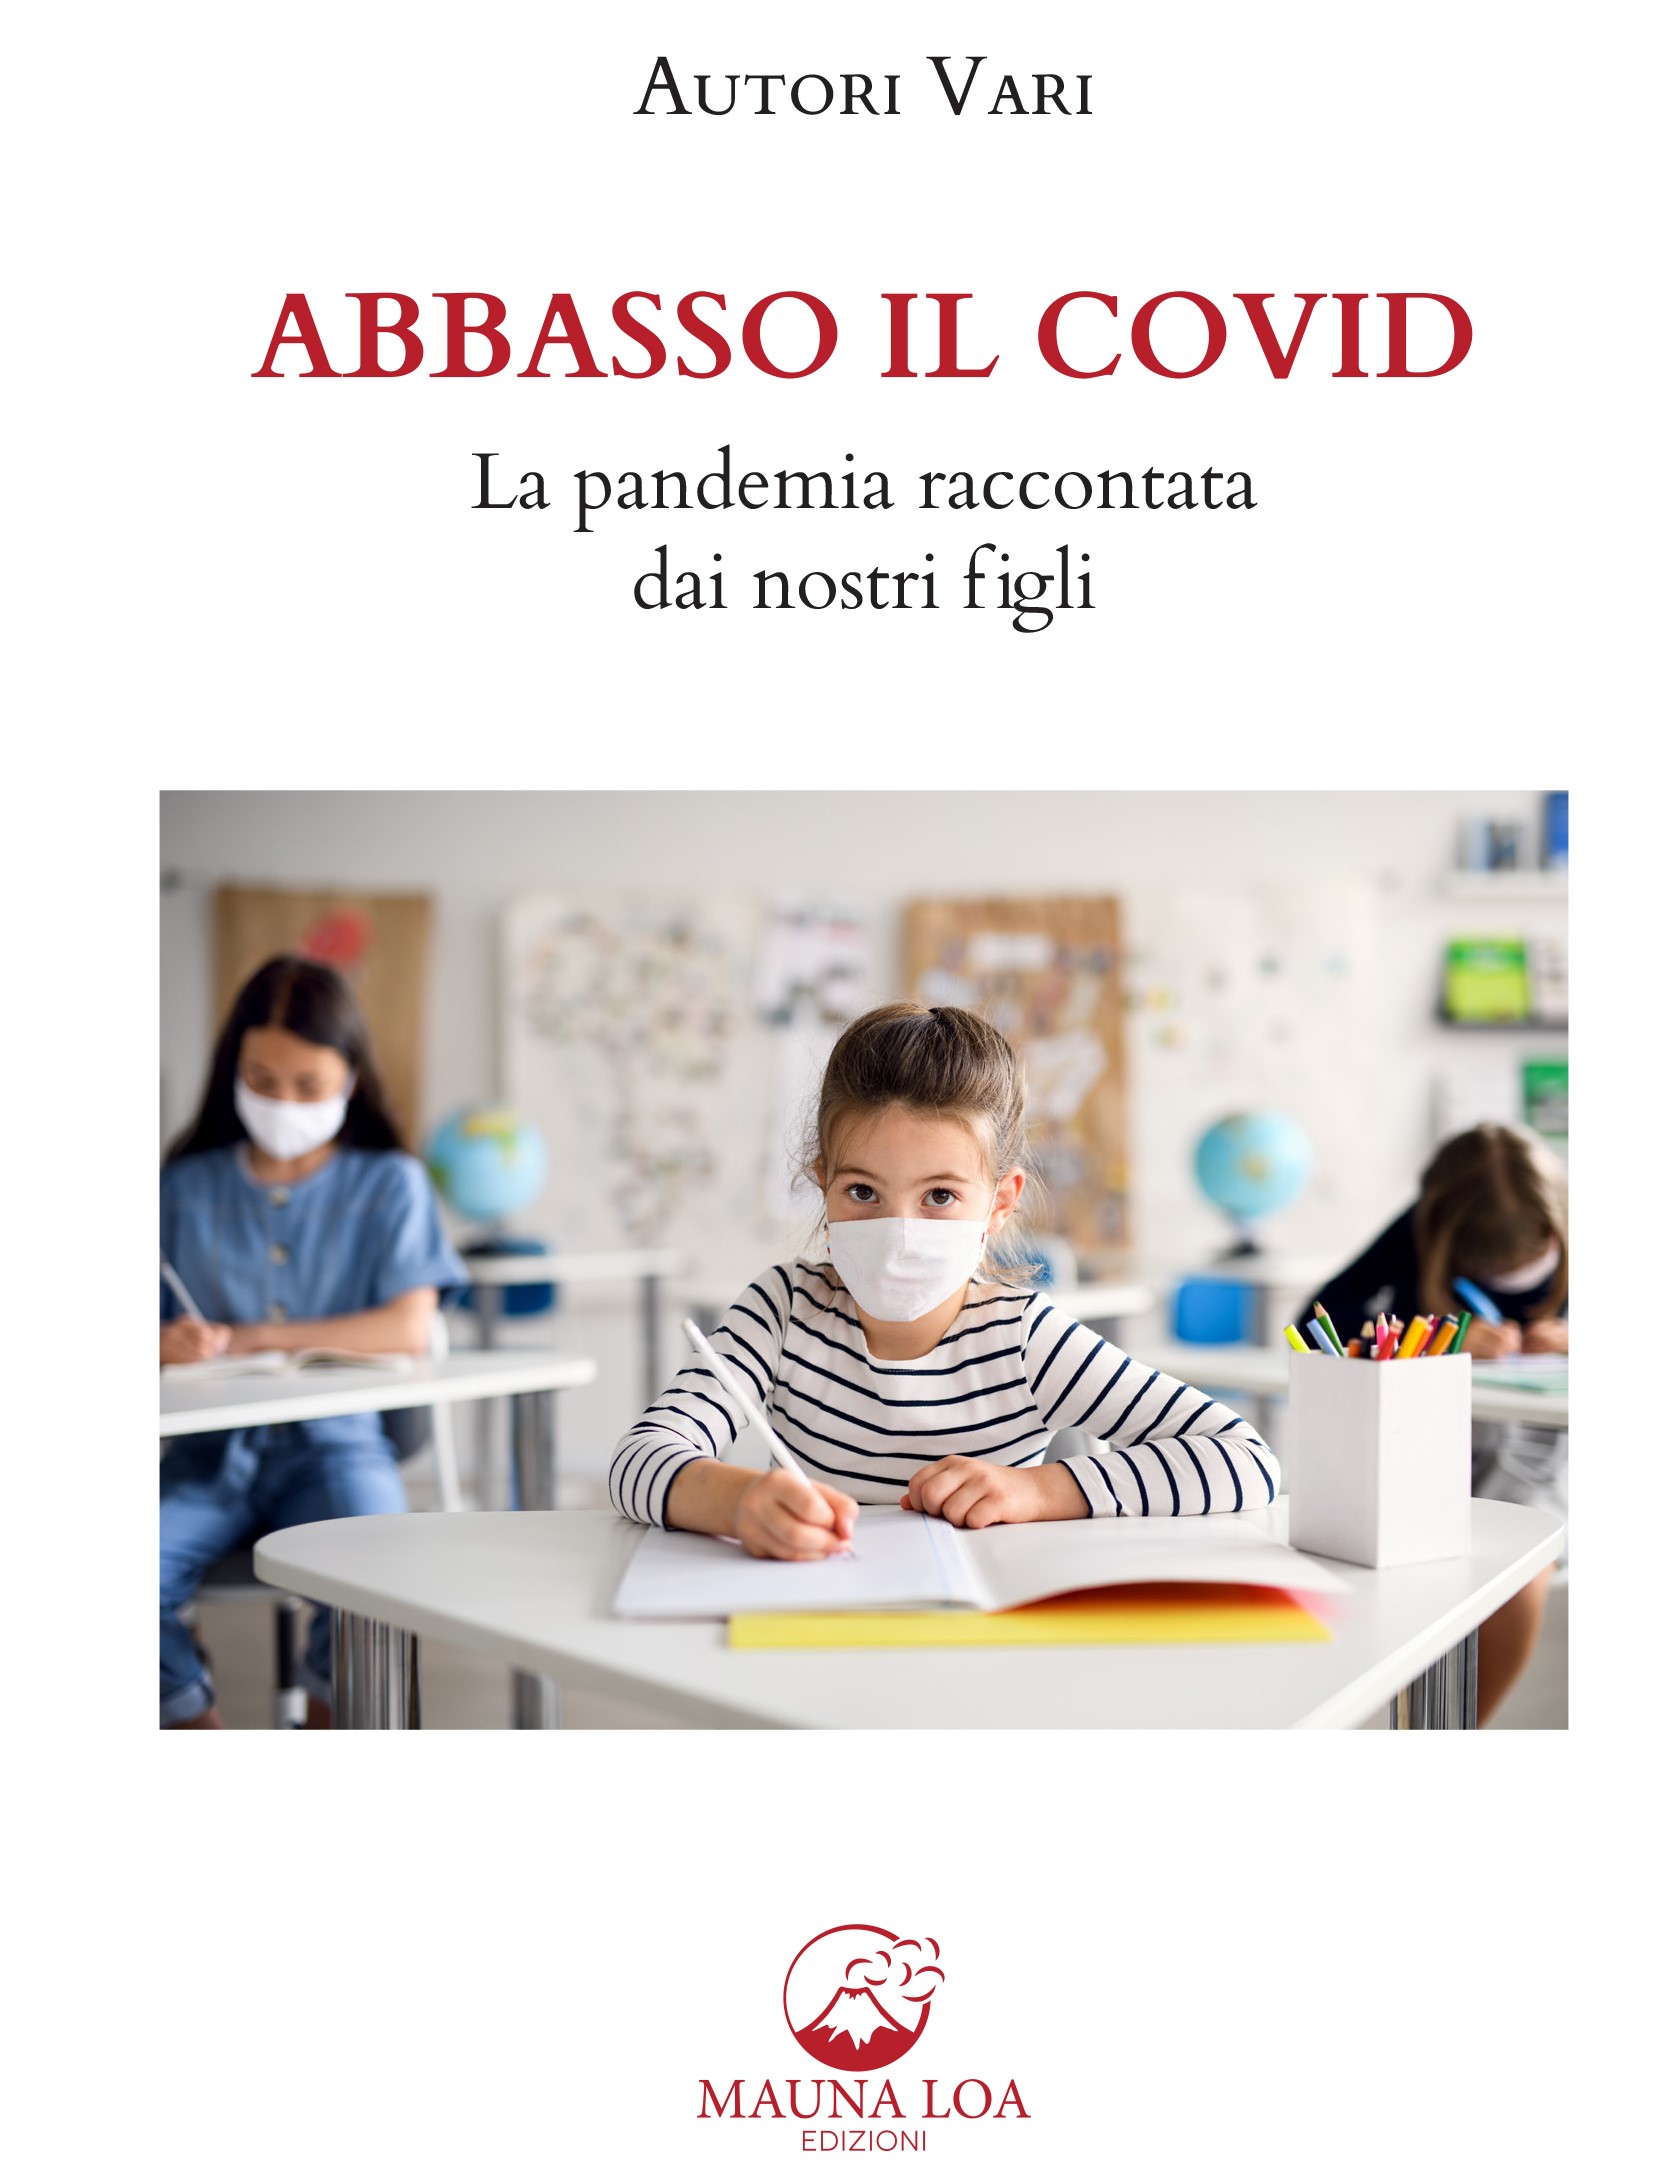 concorso ABBASSO IL COVID -Autori Vari